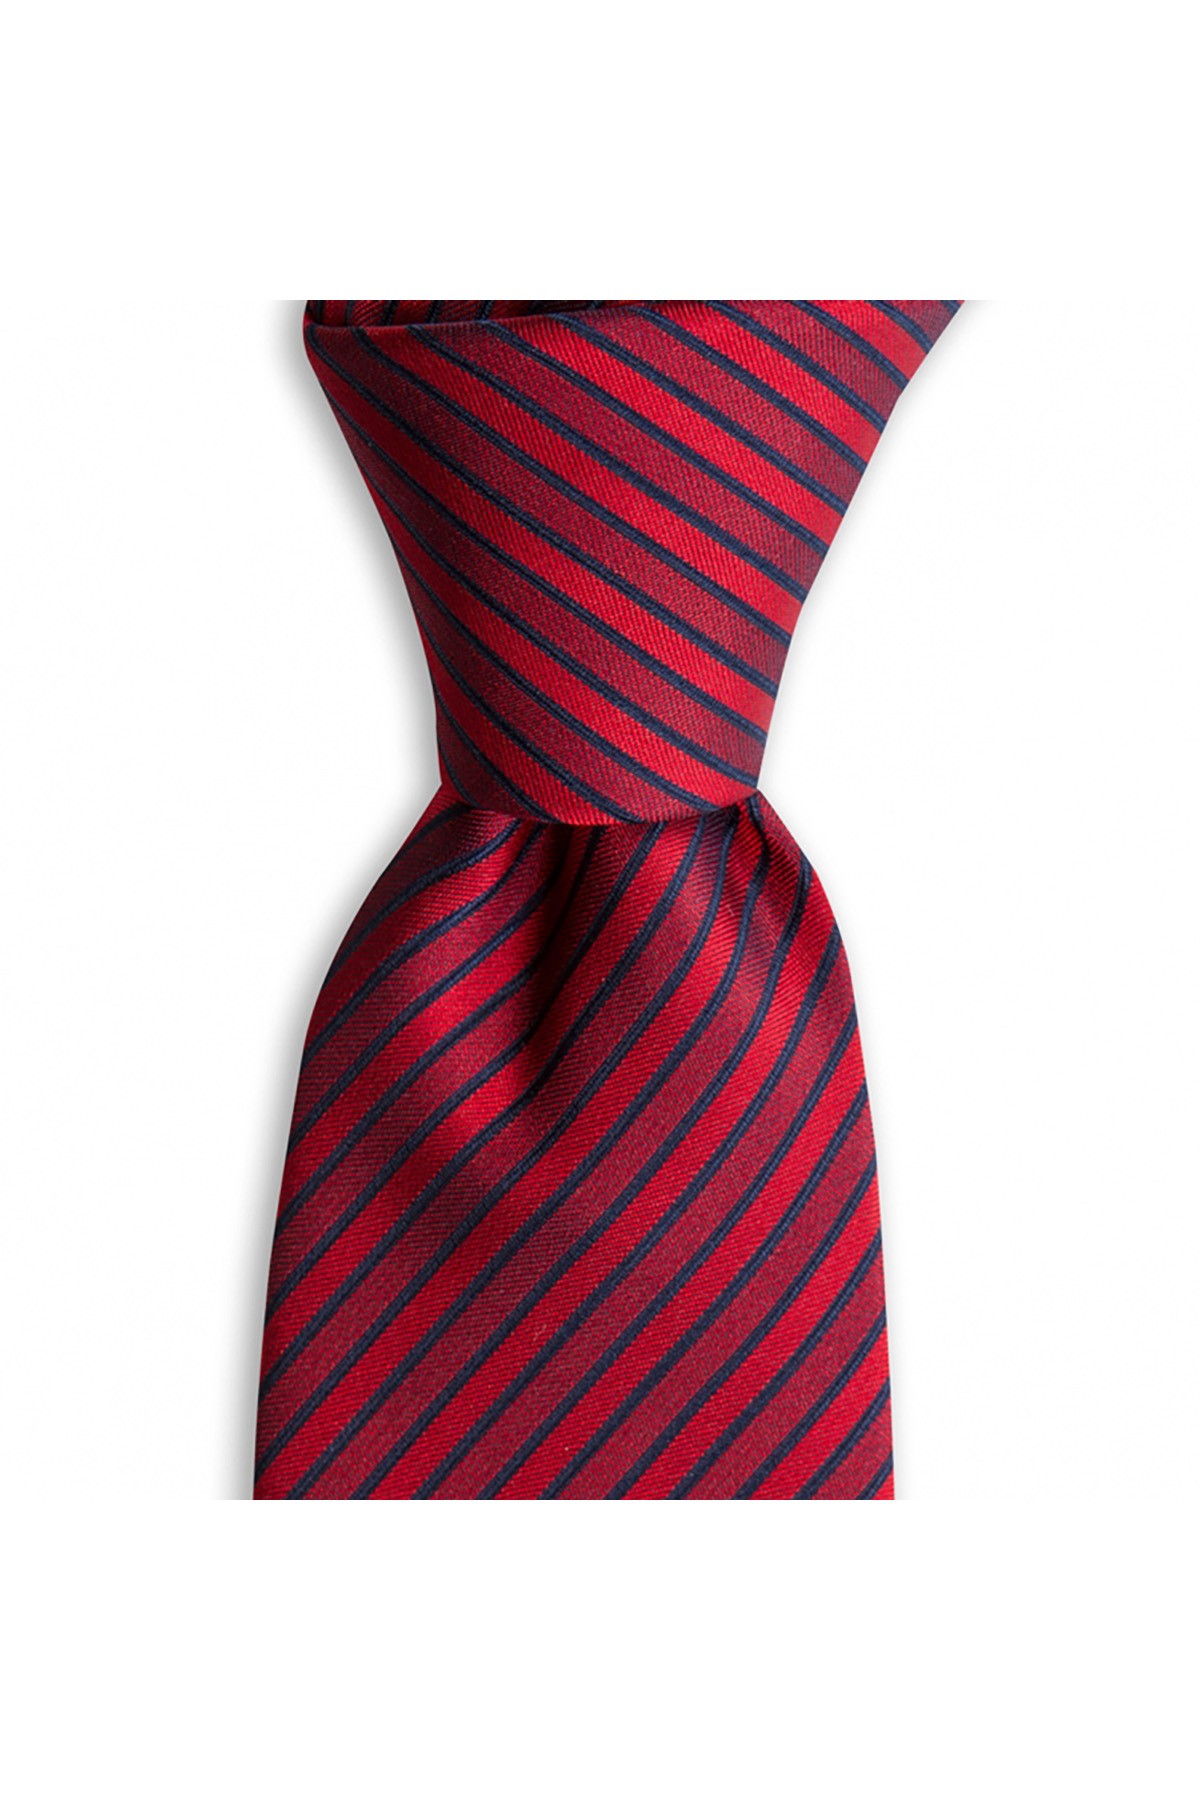 Çok çizgili 8 cm genişliğinde klasik kravat - Kırmızı